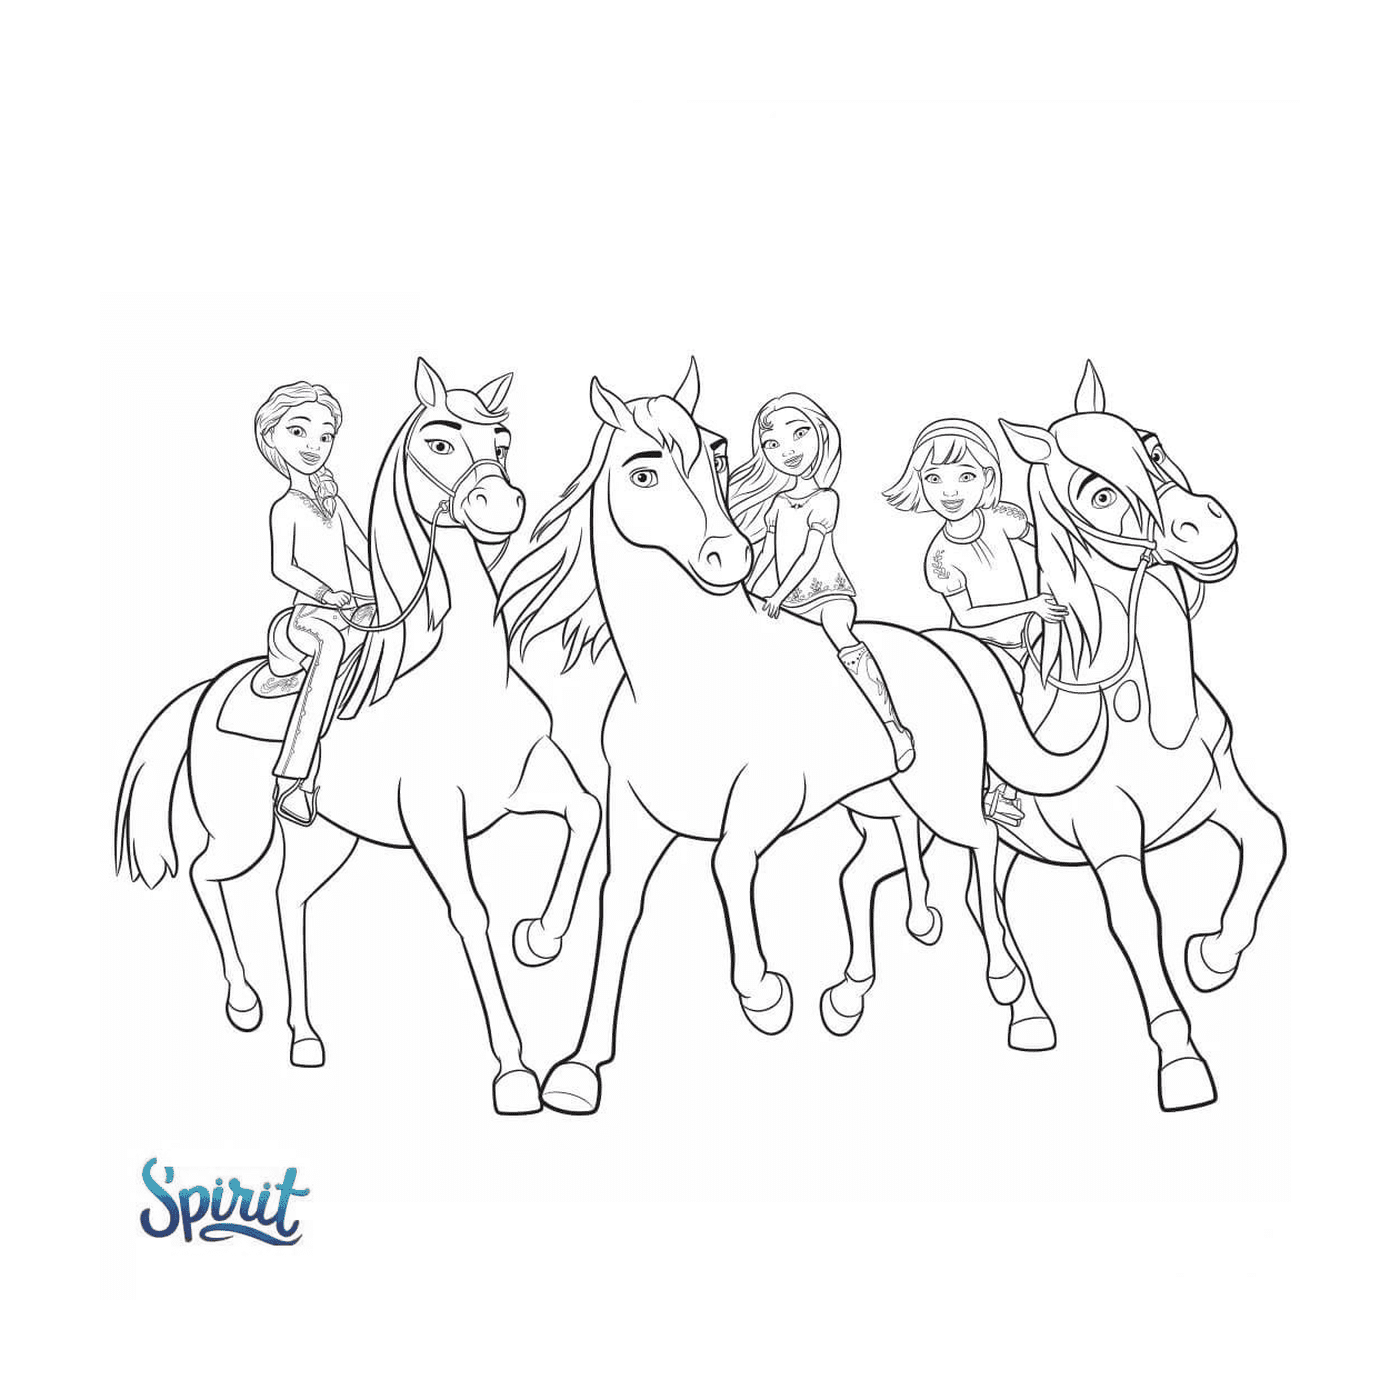  Horse Spirit, estándar de llanuras (película de animación) 